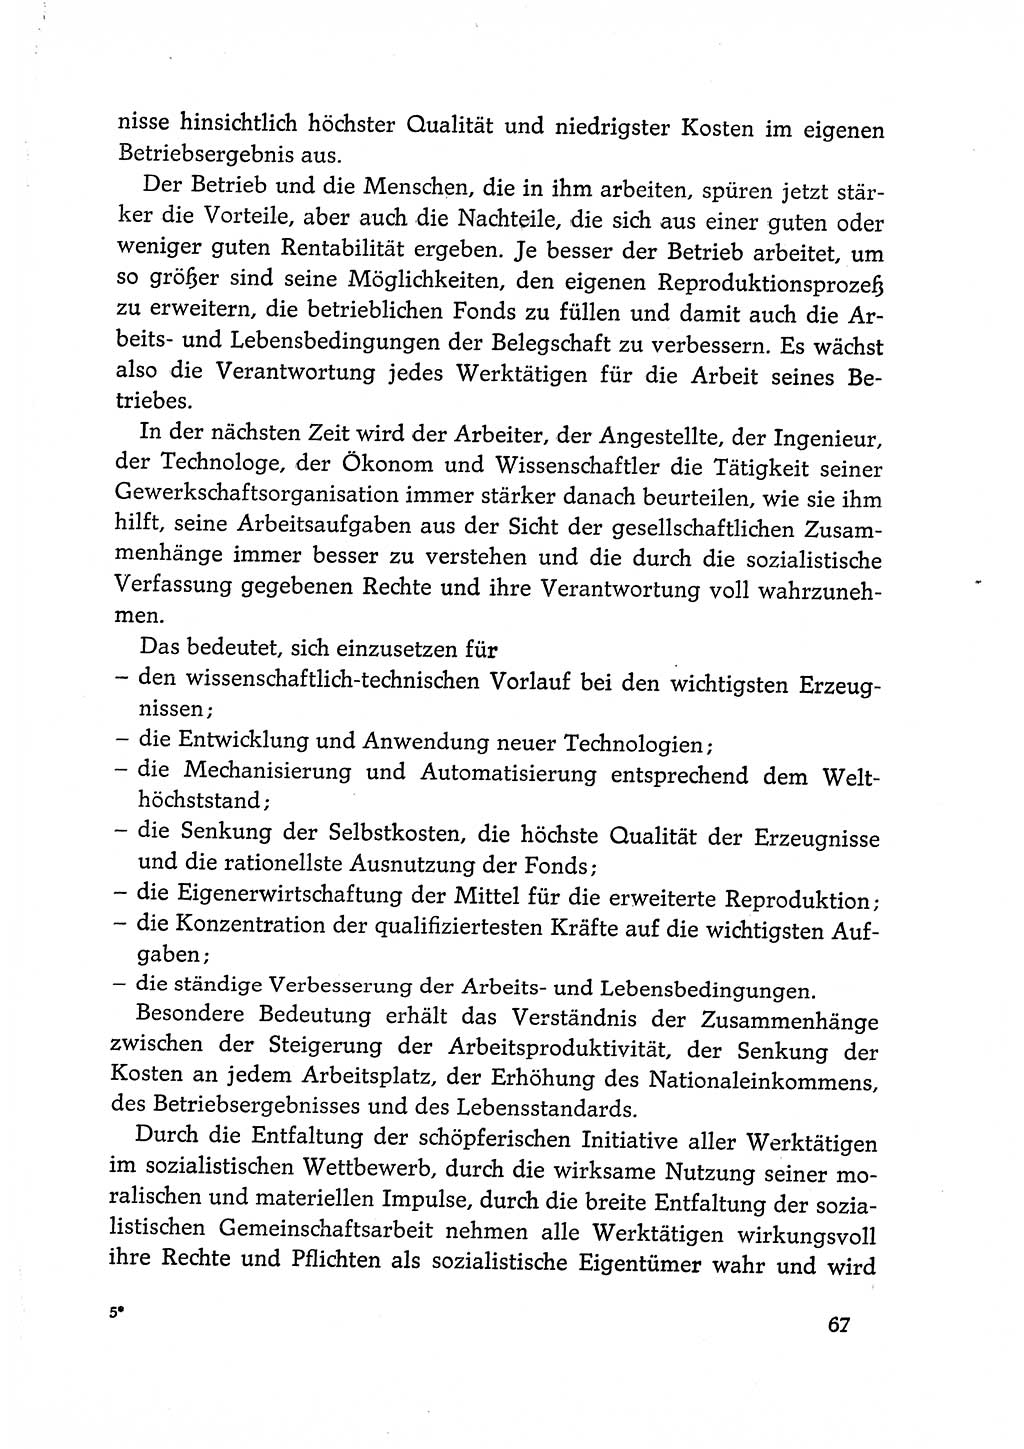 Dokumente der Sozialistischen Einheitspartei Deutschlands (SED) [Deutsche Demokratische Republik (DDR)] 1968-1969, Seite 67 (Dok. SED DDR 1968-1969, S. 67)